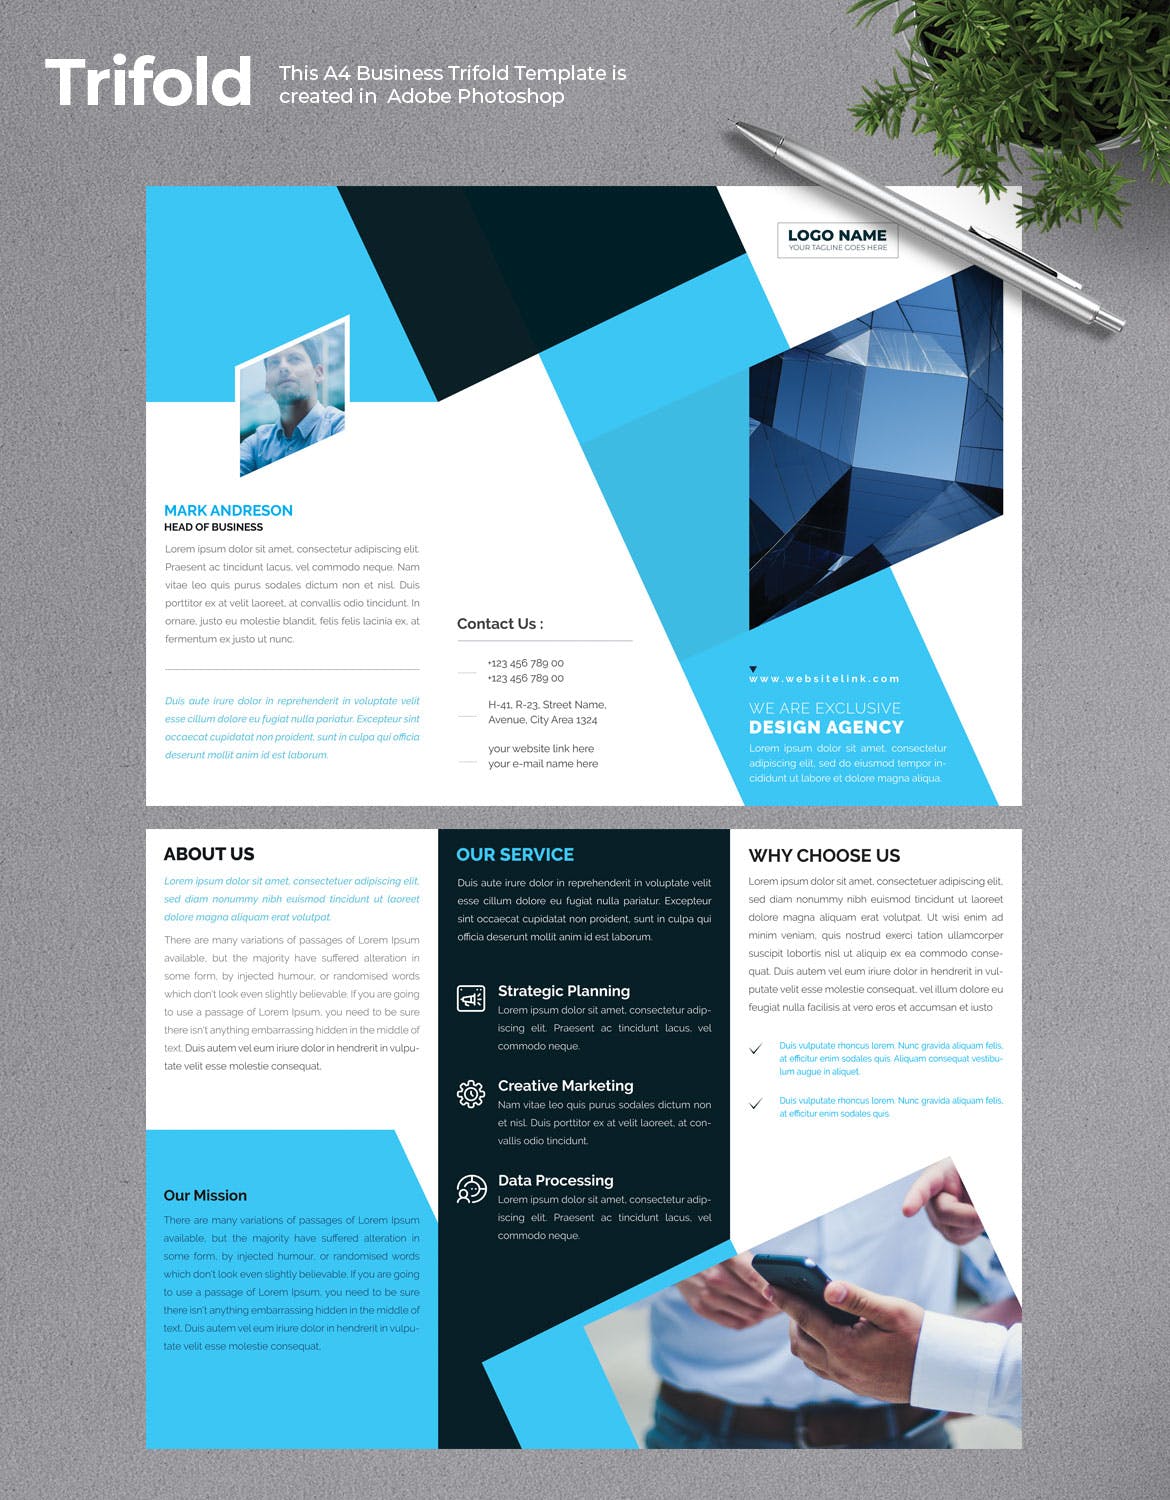 创意代理企业三折页宣传单设计模板 Business Trifold Brochure插图(1)